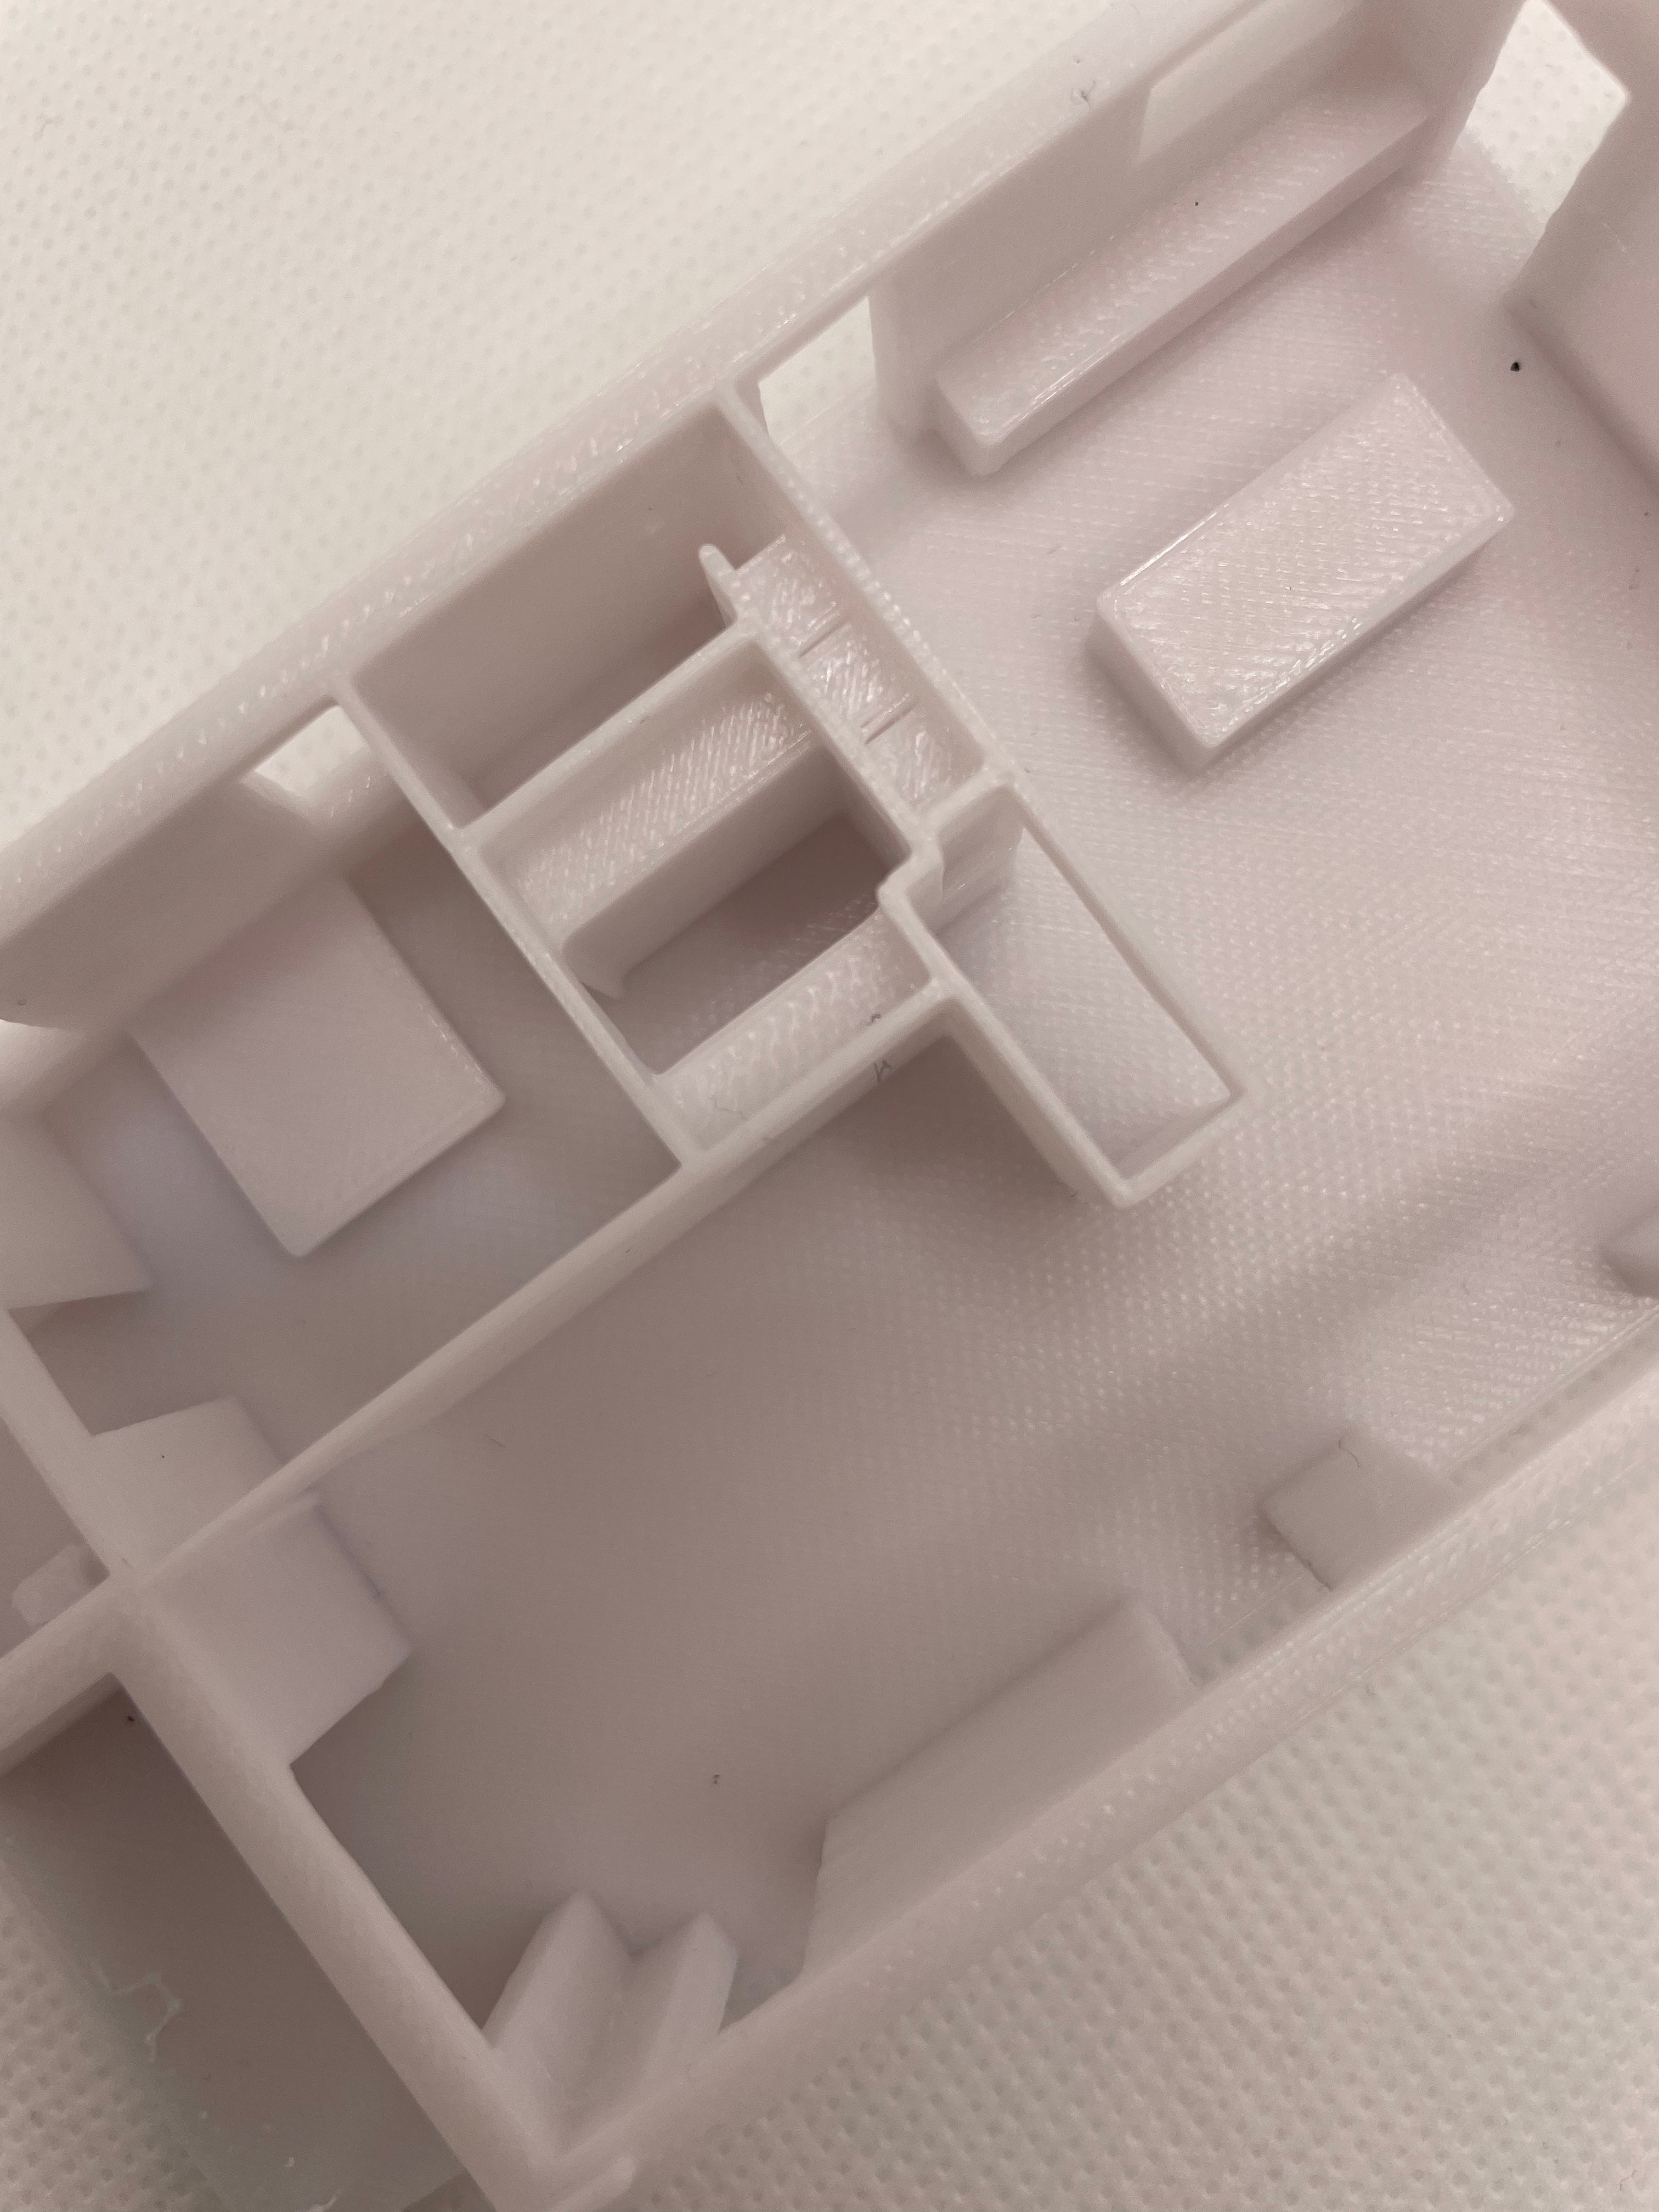 Maison imprimée en 3D à partir du plan d'étage